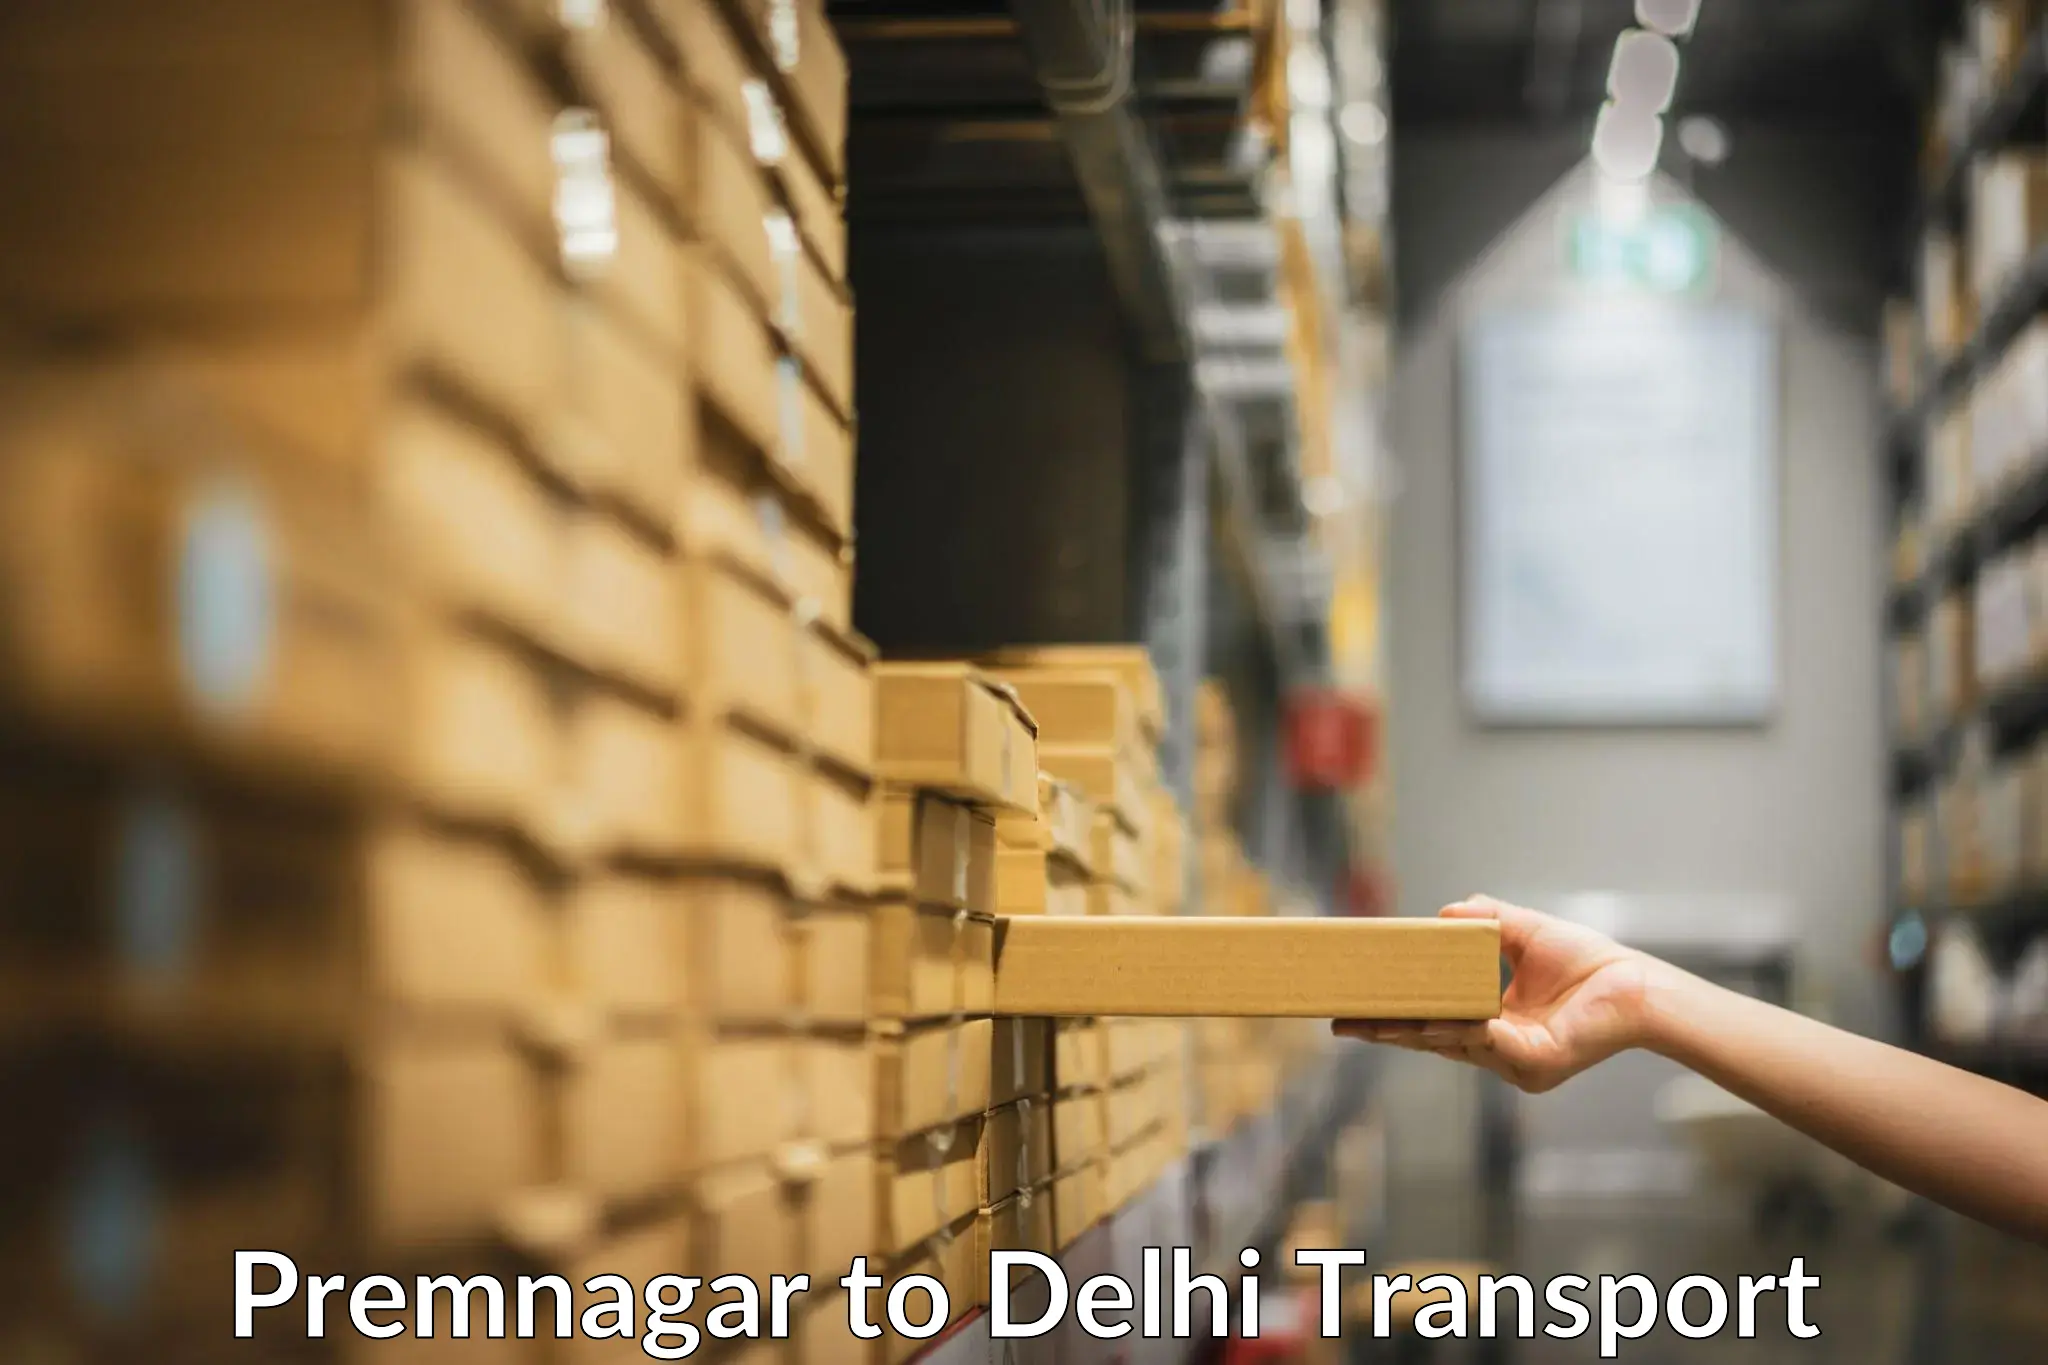 Nationwide transport services Premnagar to Delhi Technological University DTU